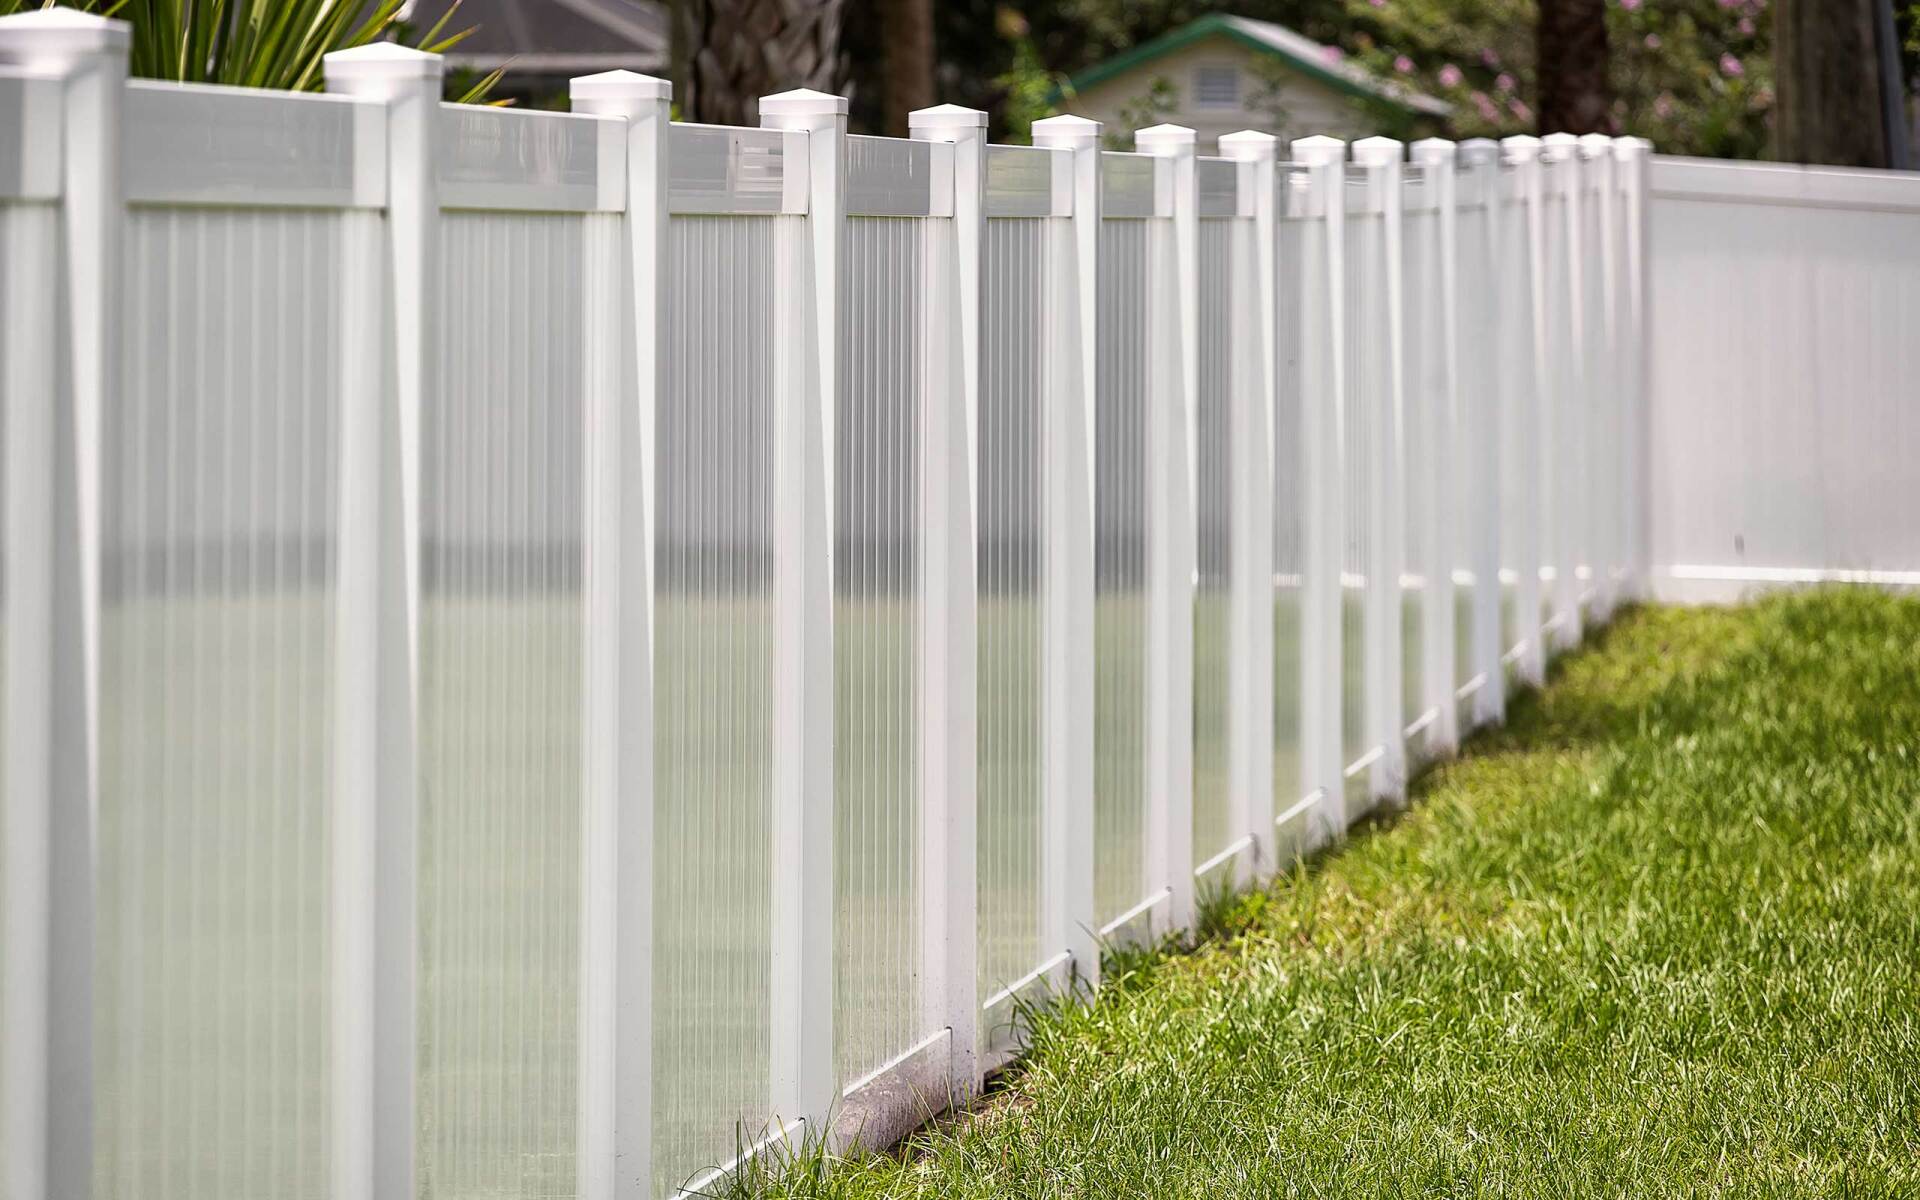 Customized fence